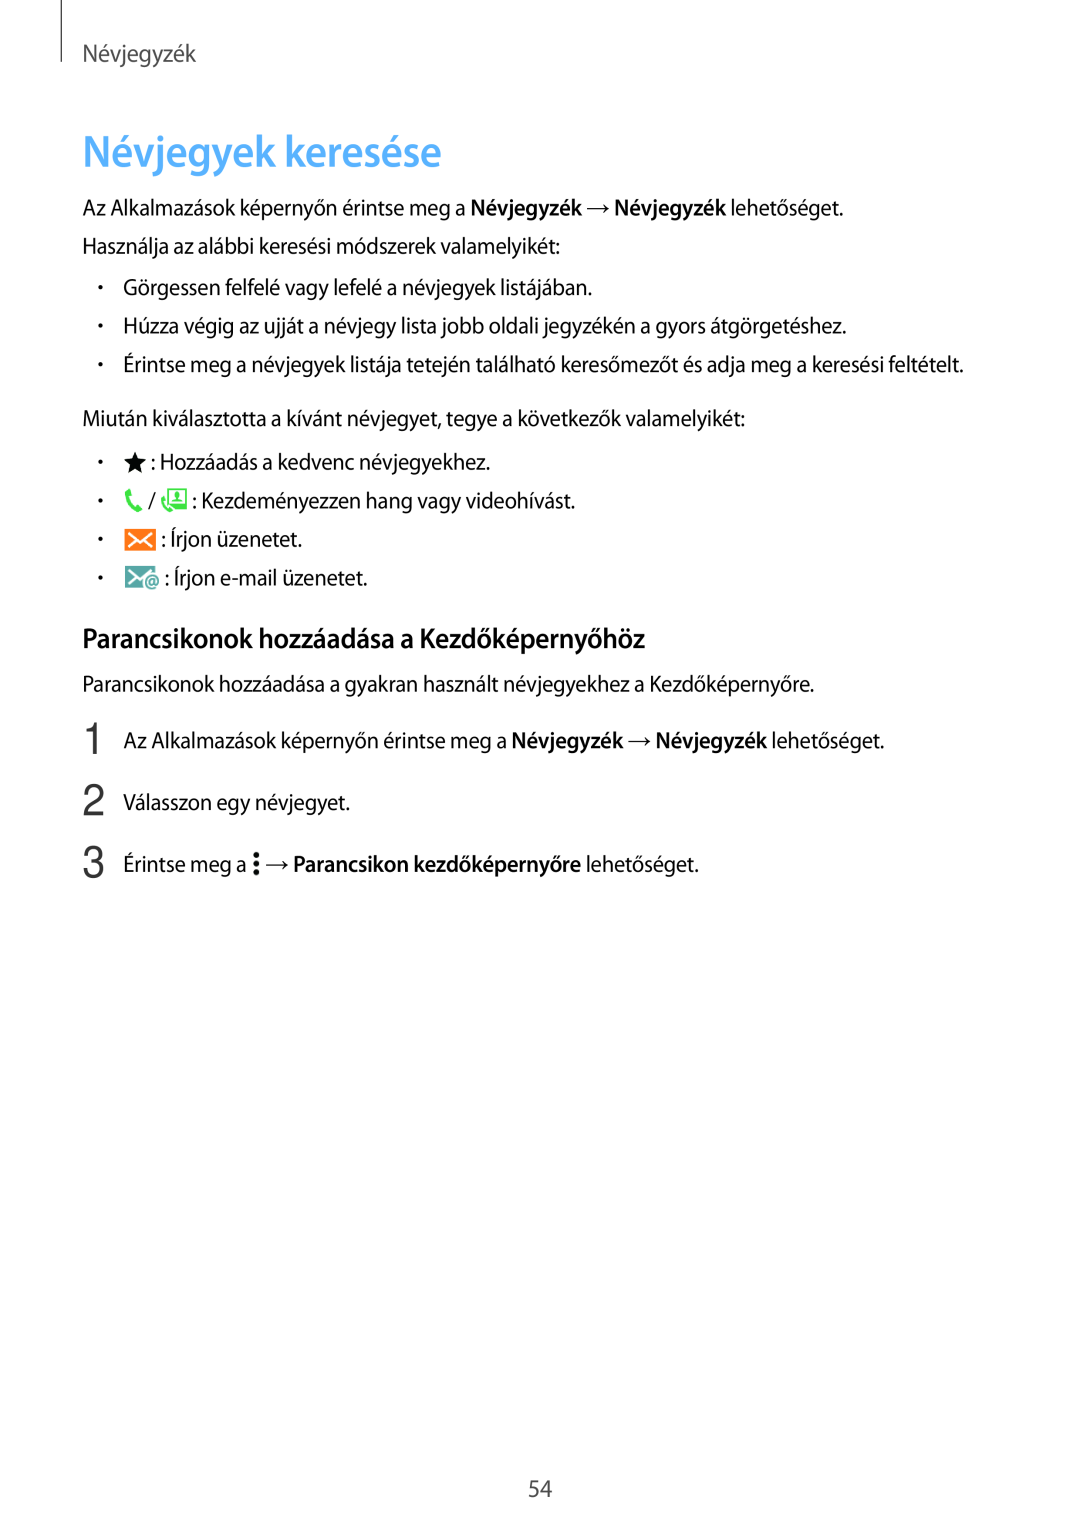 Samsung SM-A300FZKUTMZ, SM-A300FZDUXEO manual Névjegyek keresése, Parancsikonok hozzáadása a Kezdőképernyőhöz, Névjegyzék 